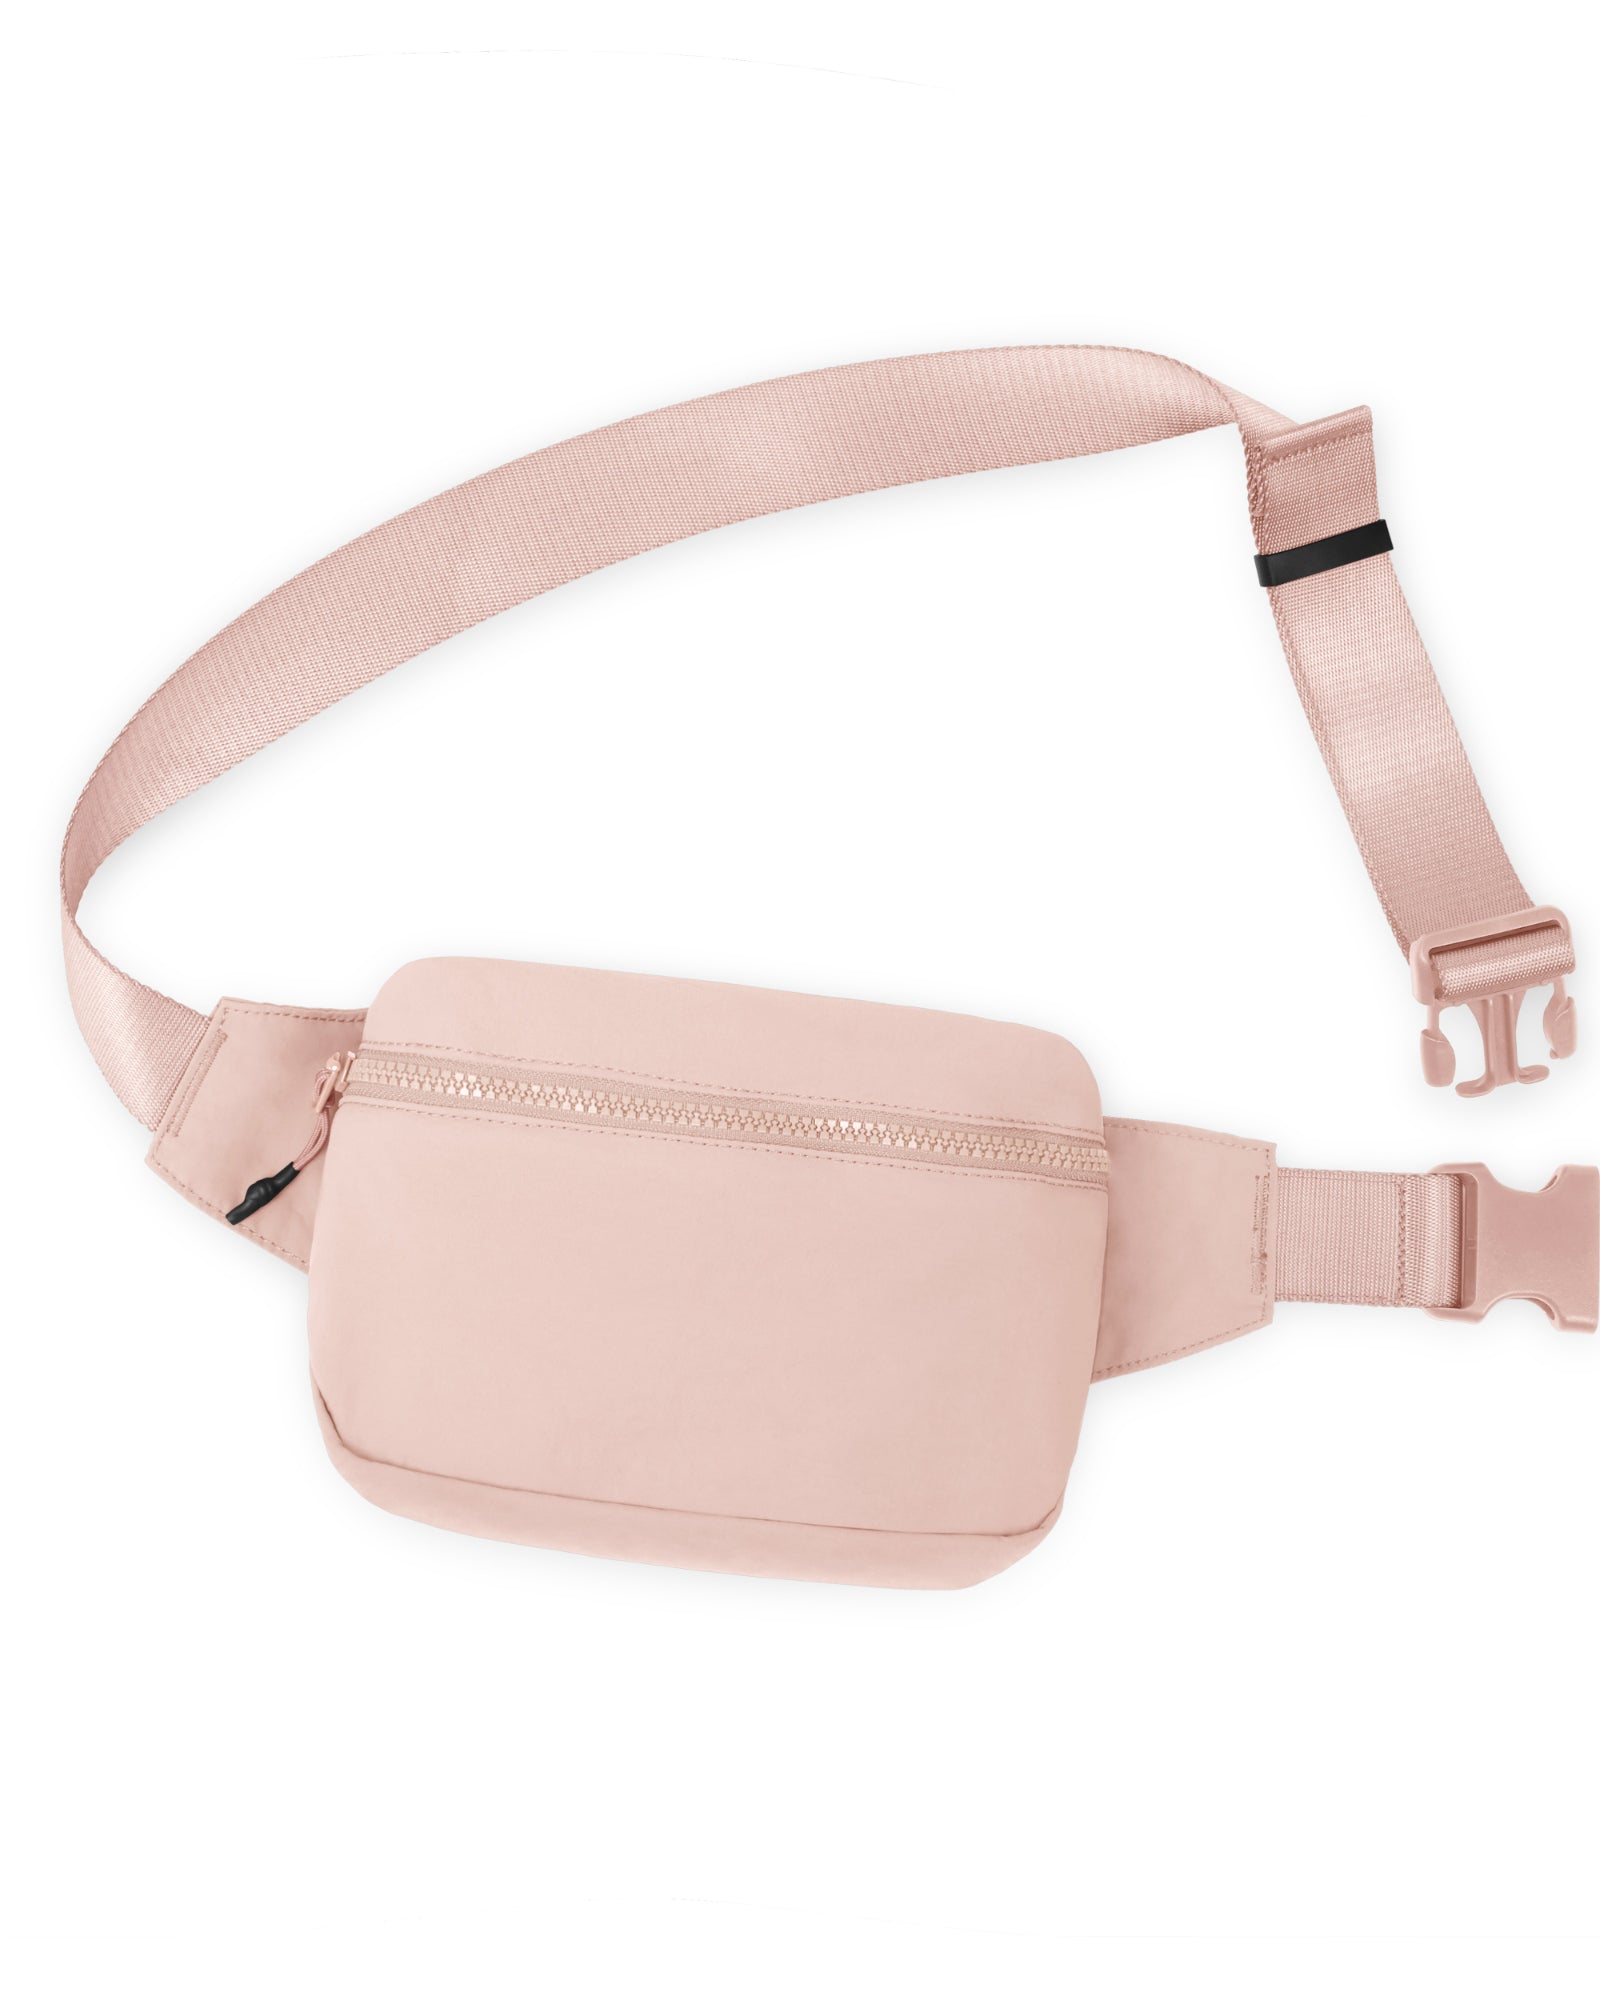 2L Belt Bag with Adjustable Strap Light Pink 8.5" x 5" x 2" - ododos